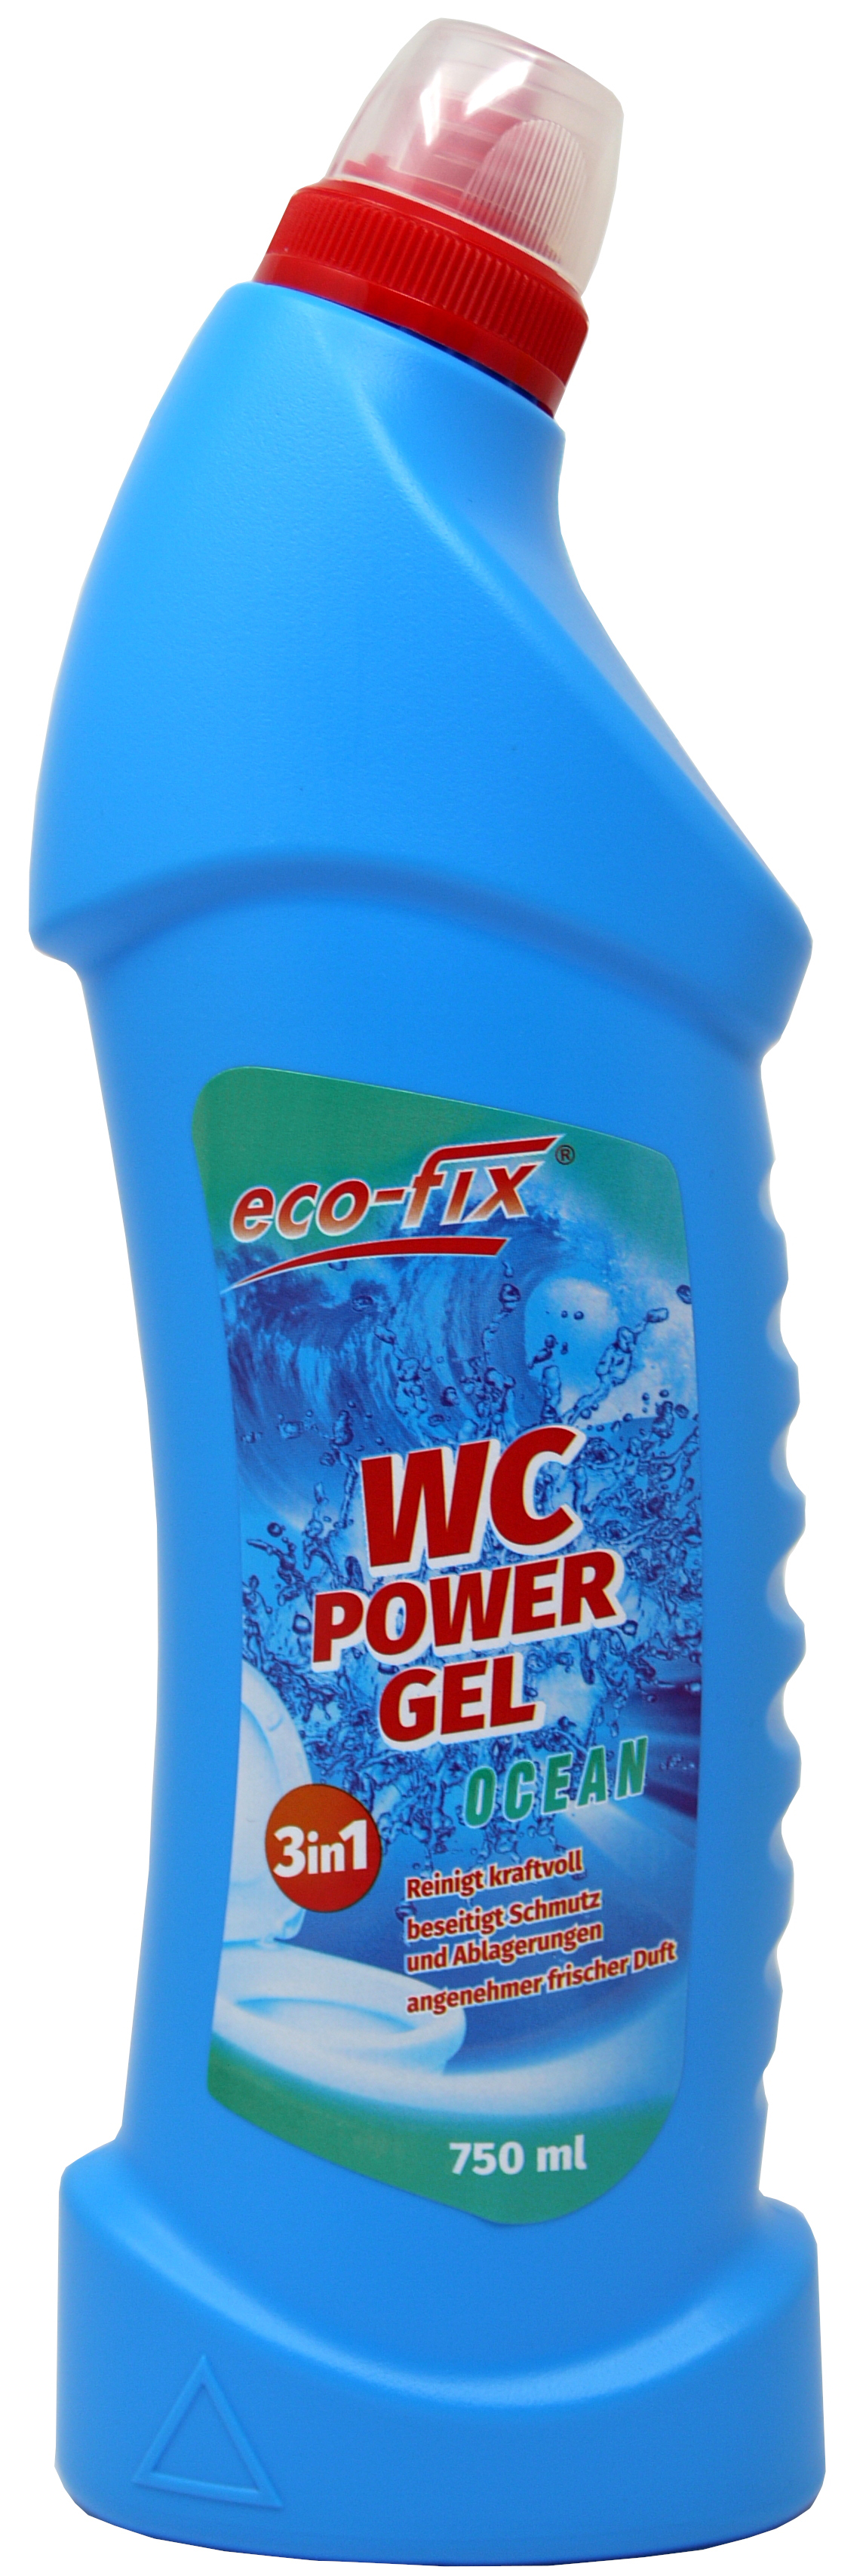 01860 - eco-fix WC Power Gel 750ml- Ocean